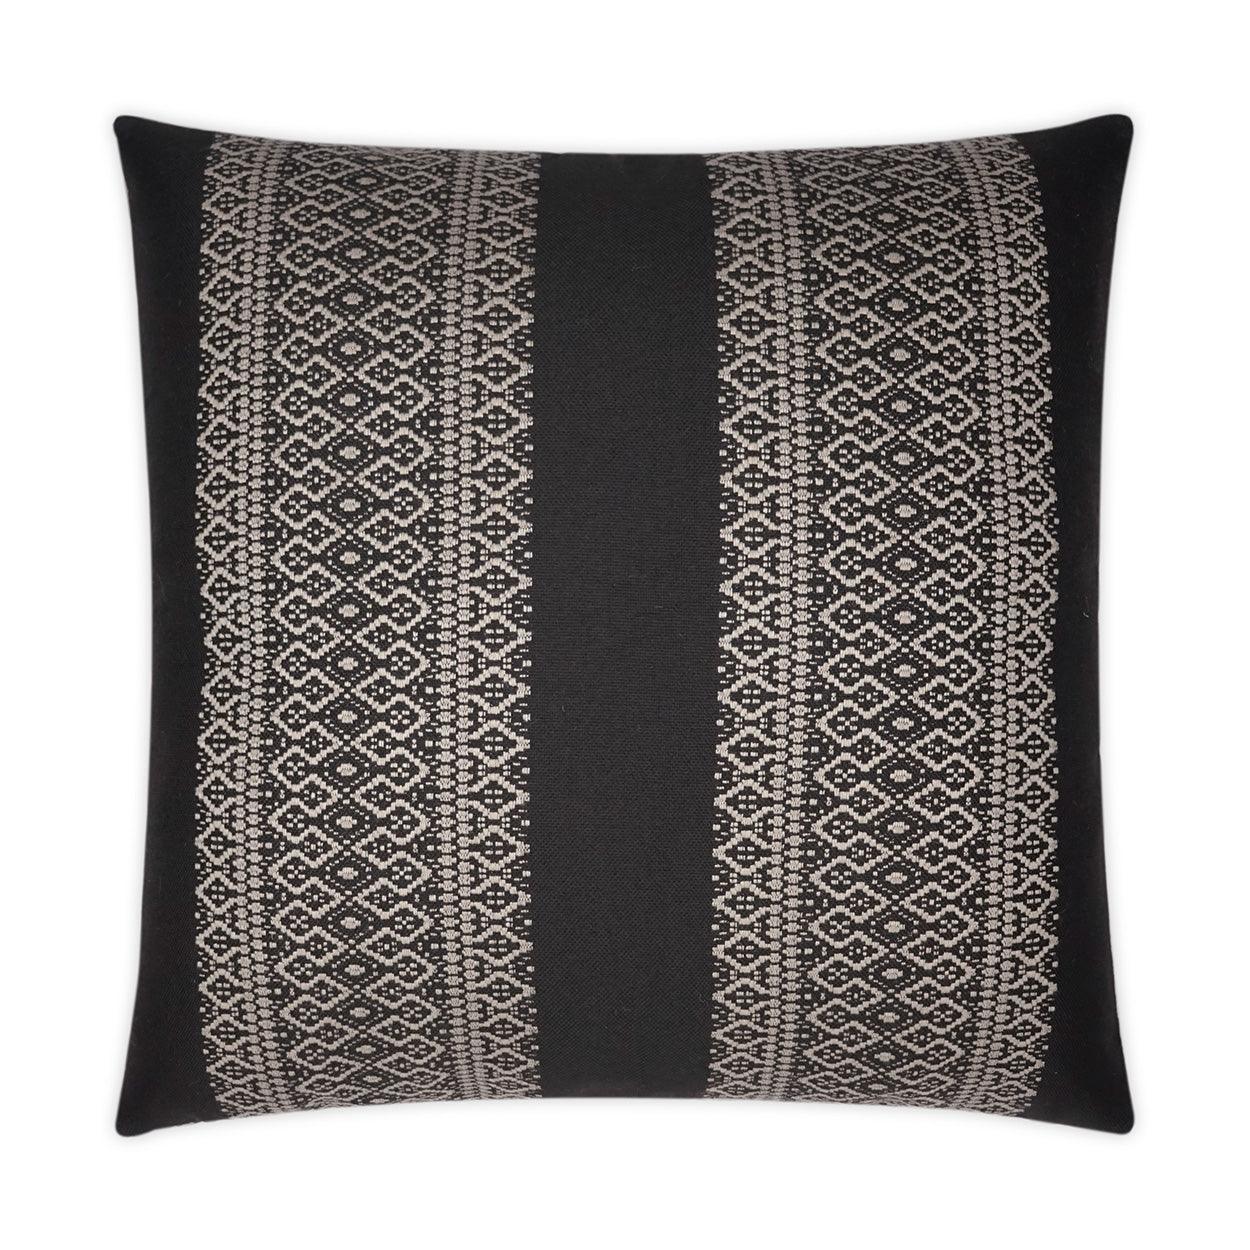 LOOMLAN Outdoor - Outdoor Upton Pillow - Black - Outdoor Pillows